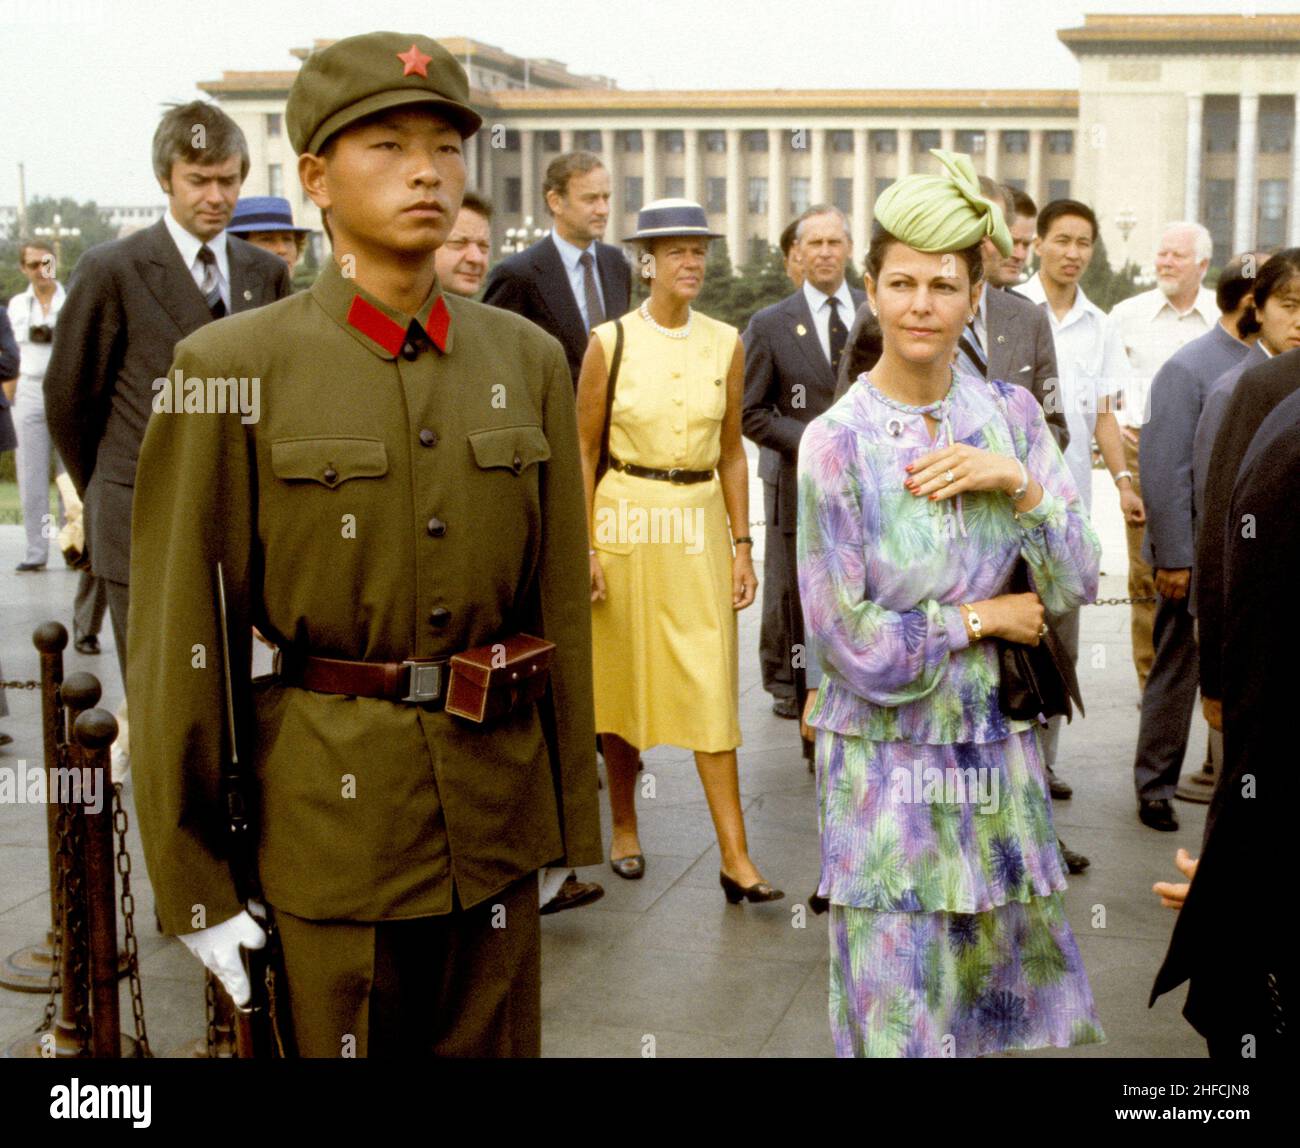 LA REGINA svedese SILVIA durante una visita di Stato in cina 1981 passa un soldato uniforme in una vecchia uniforme in Piazza Tianamen Foto Stock